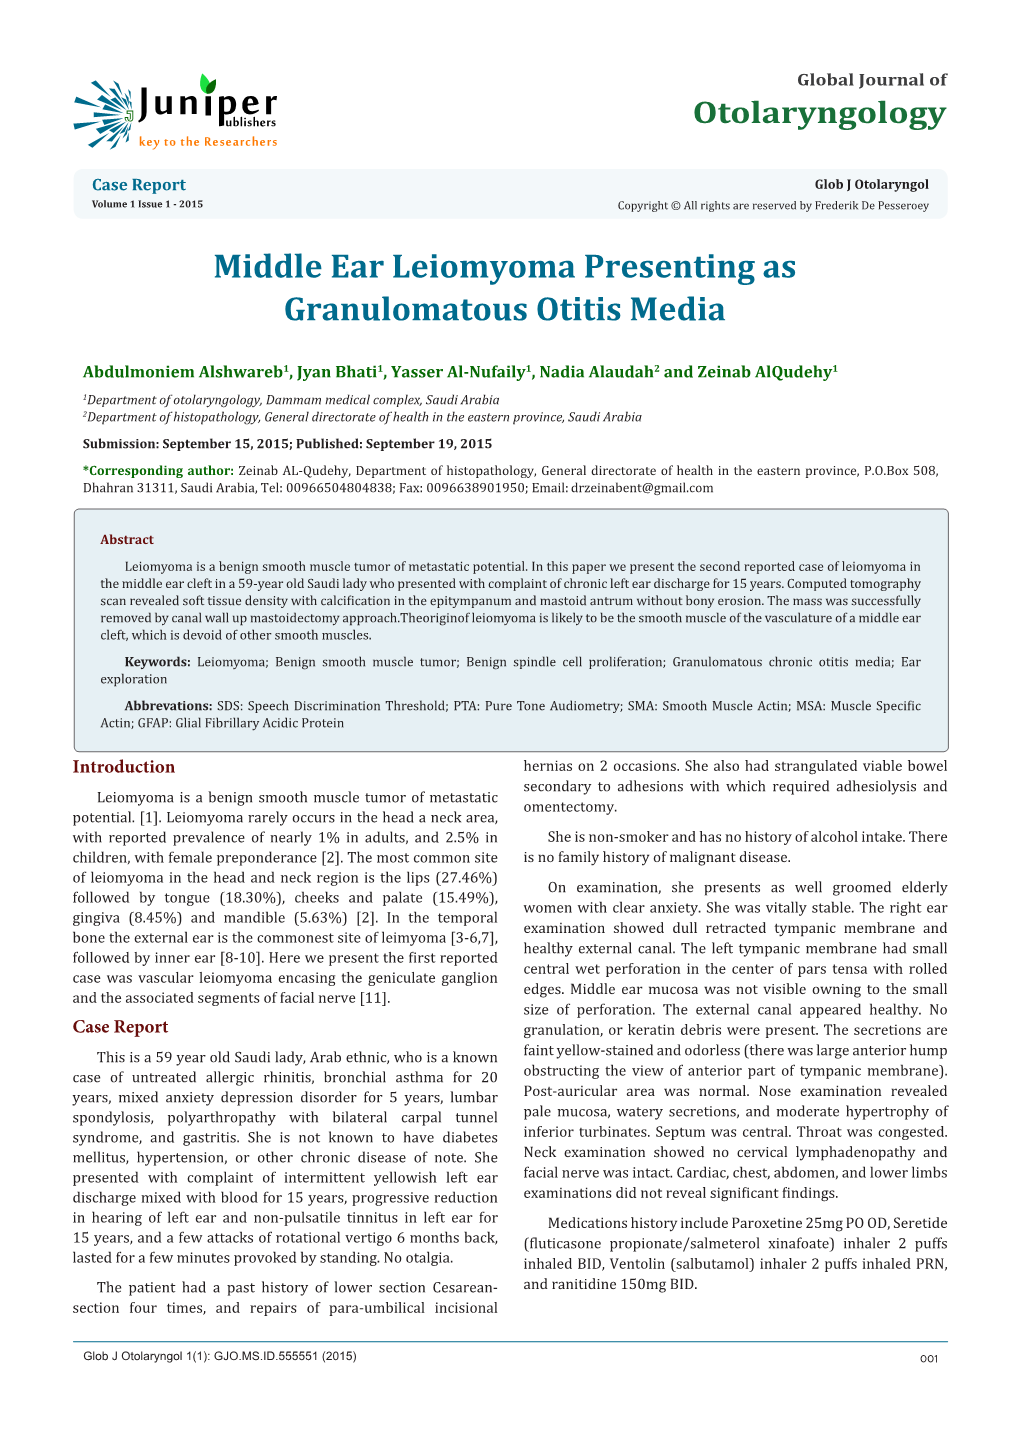 Middle Ear Leiomyoma Presenting As Granulomatous Otitis Media